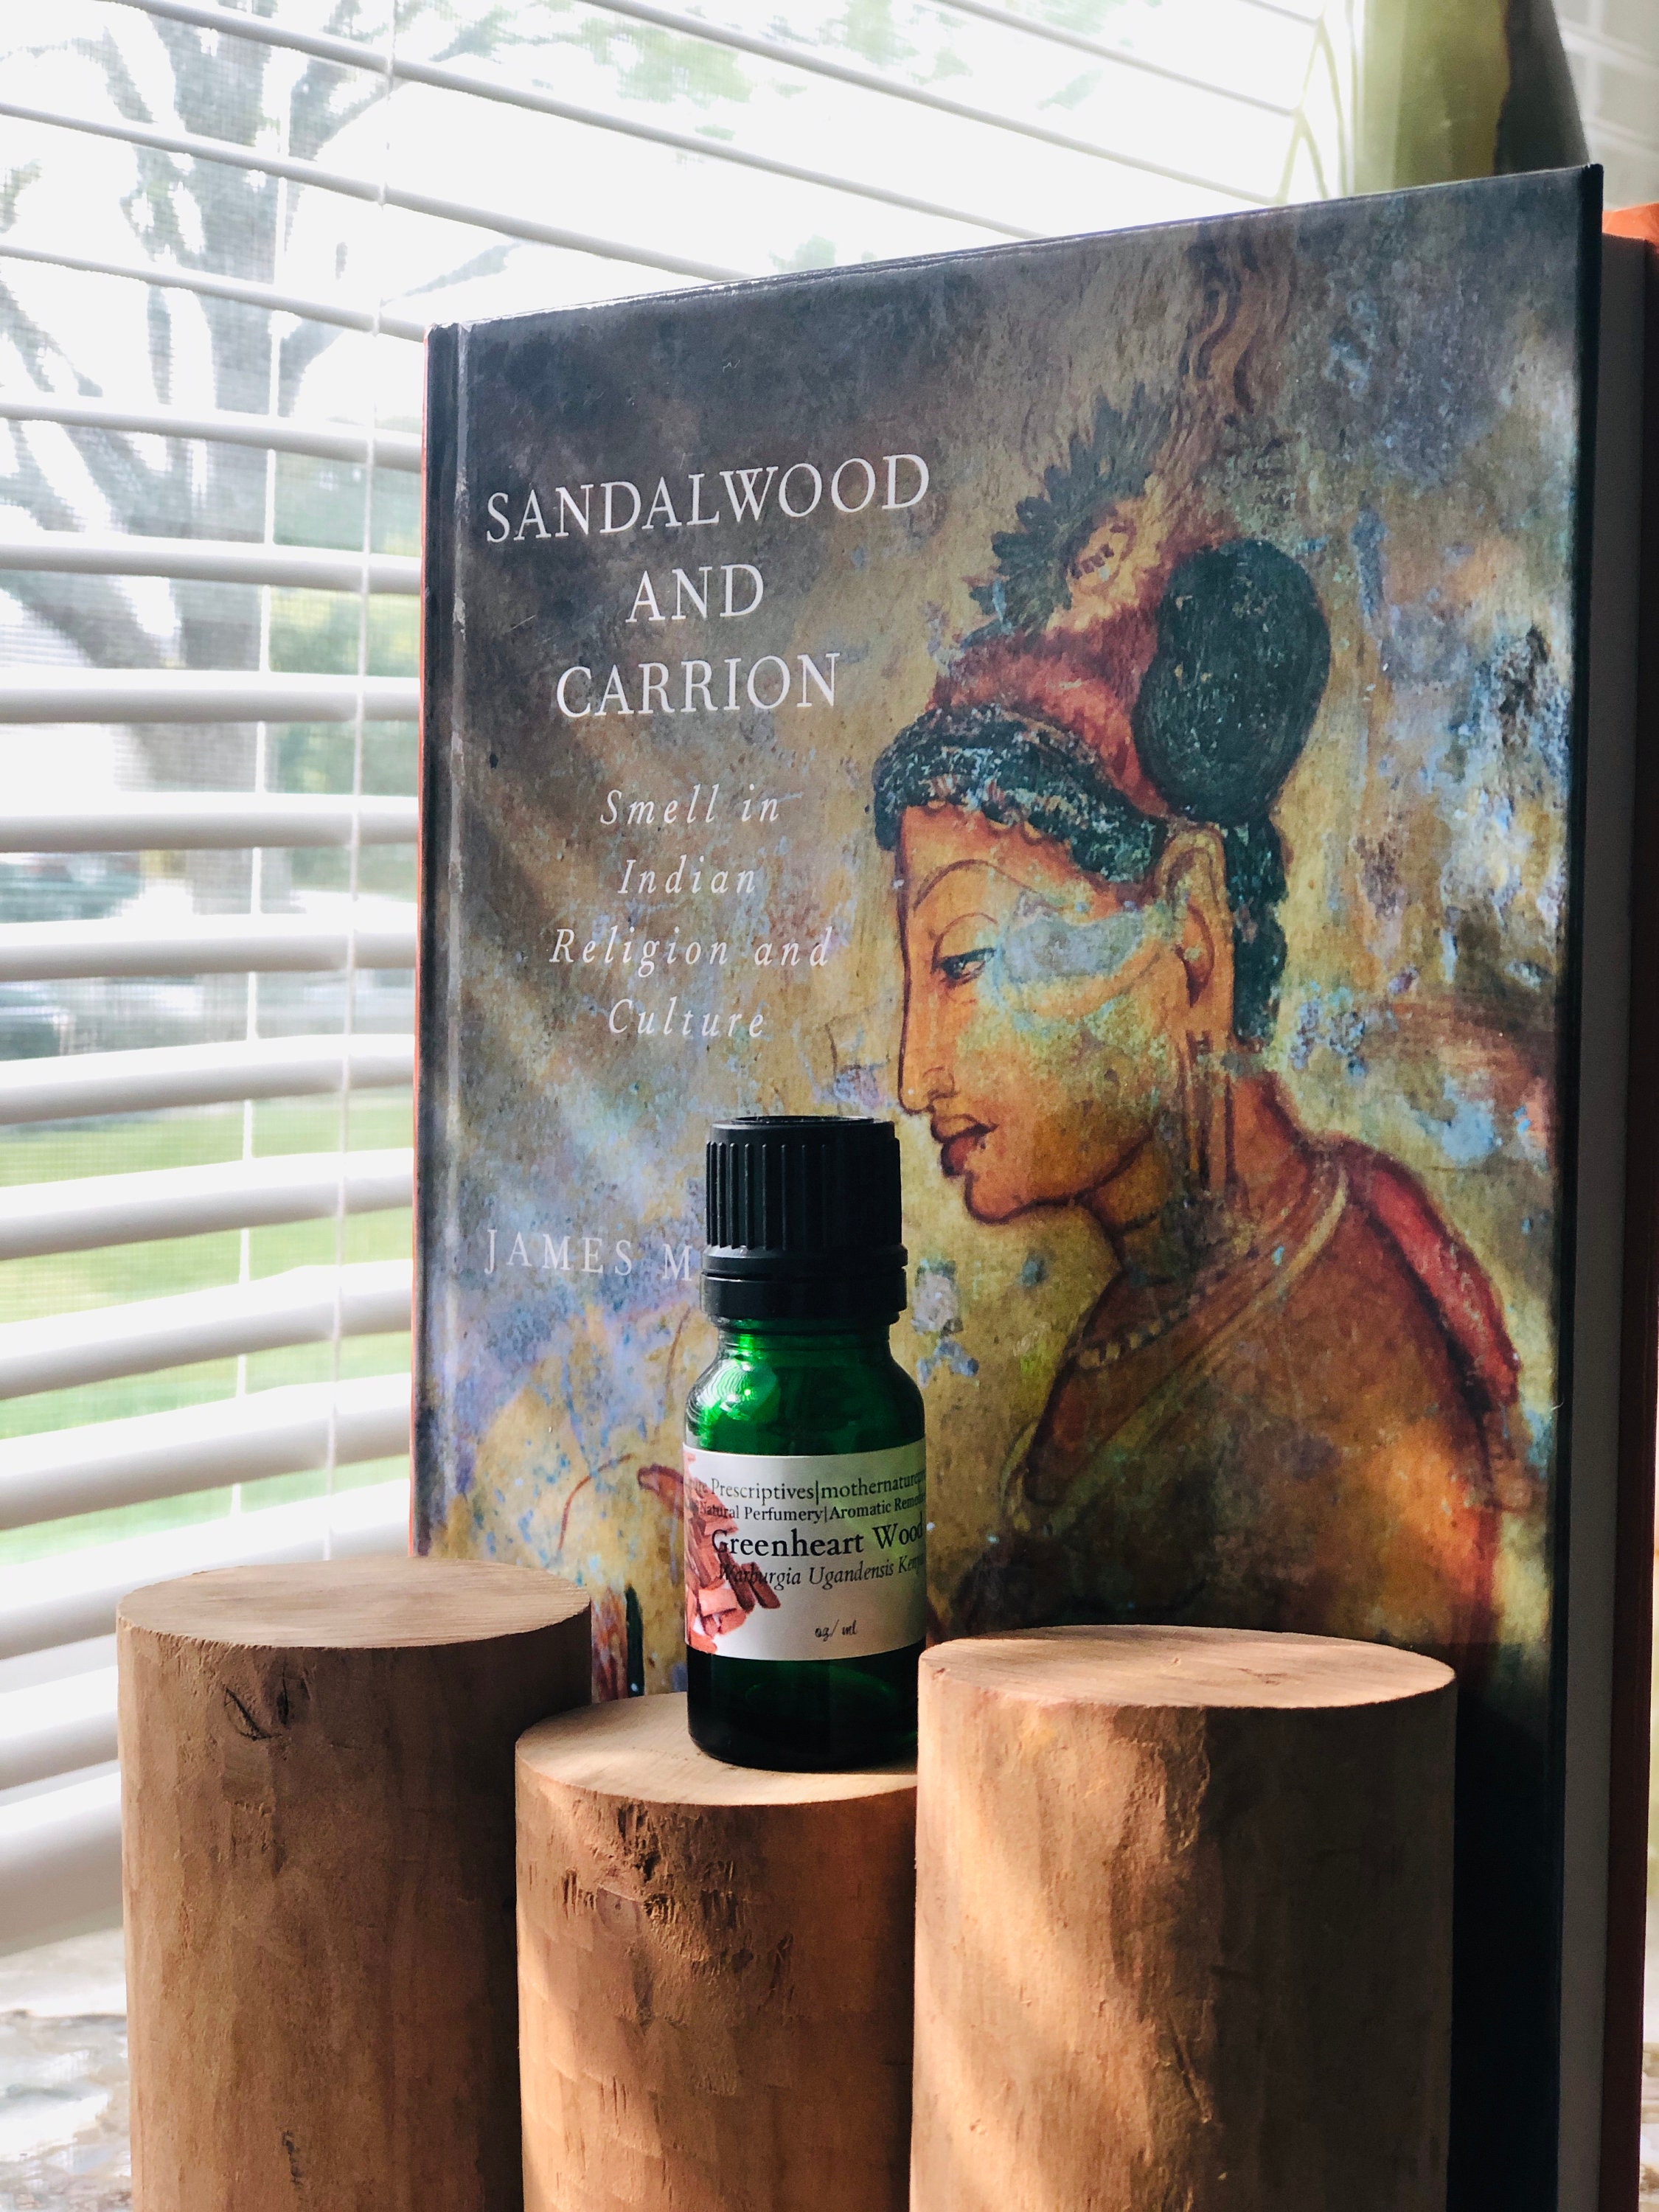 Sandalwood Essential Oil - Aromatics International